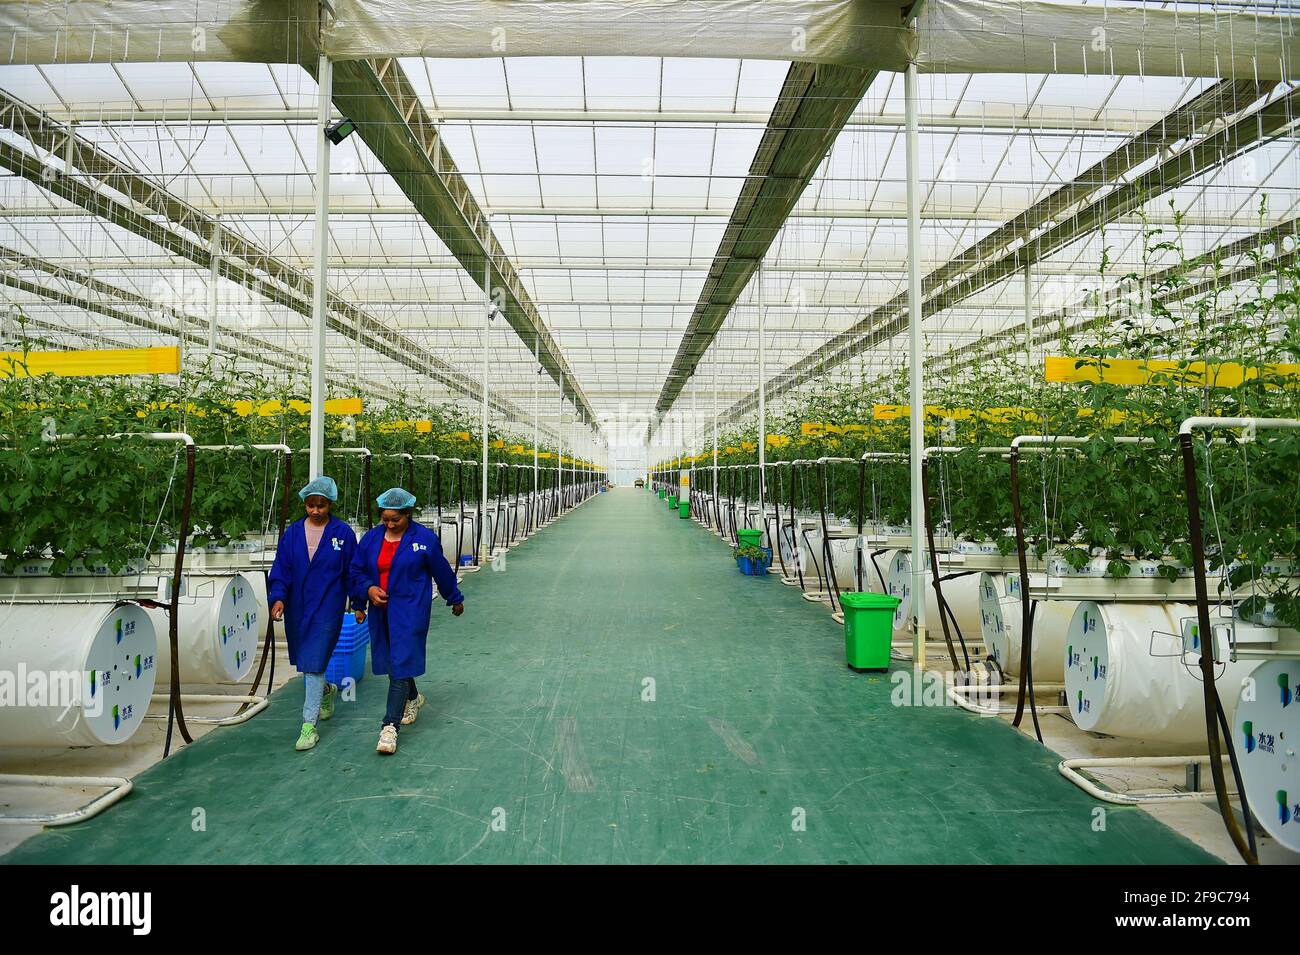 210417) -- KASHGAR, 17 de abril de 2021 (Xinhua) -- Dos trabajadores  caminan dentro de un invernadero inteligente de un parque industrial de  verduras moderno en el condado de Shule, Kashgar, región